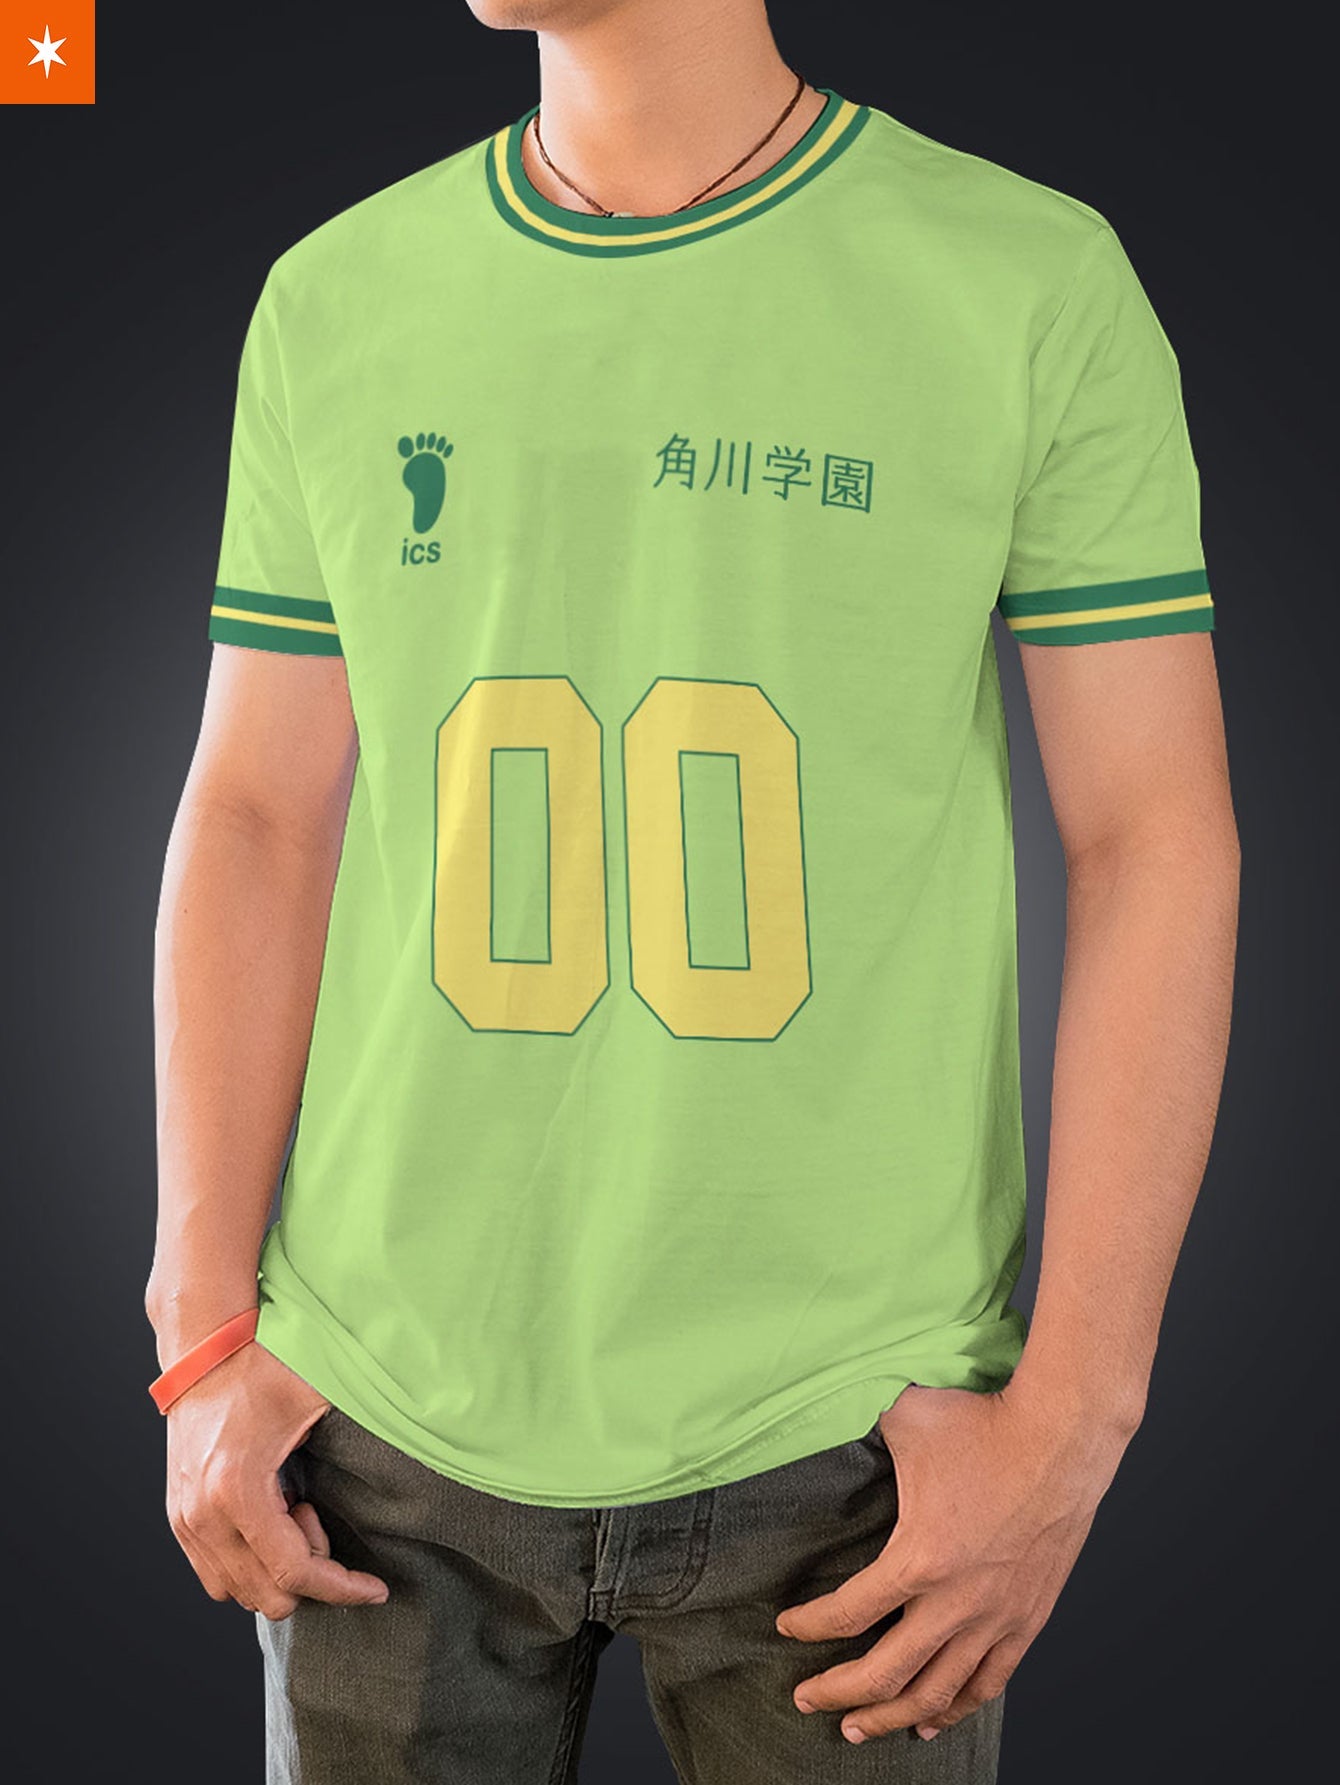 Fandomaniax - Personalized Team Kakugawa Unisex T-Shirt